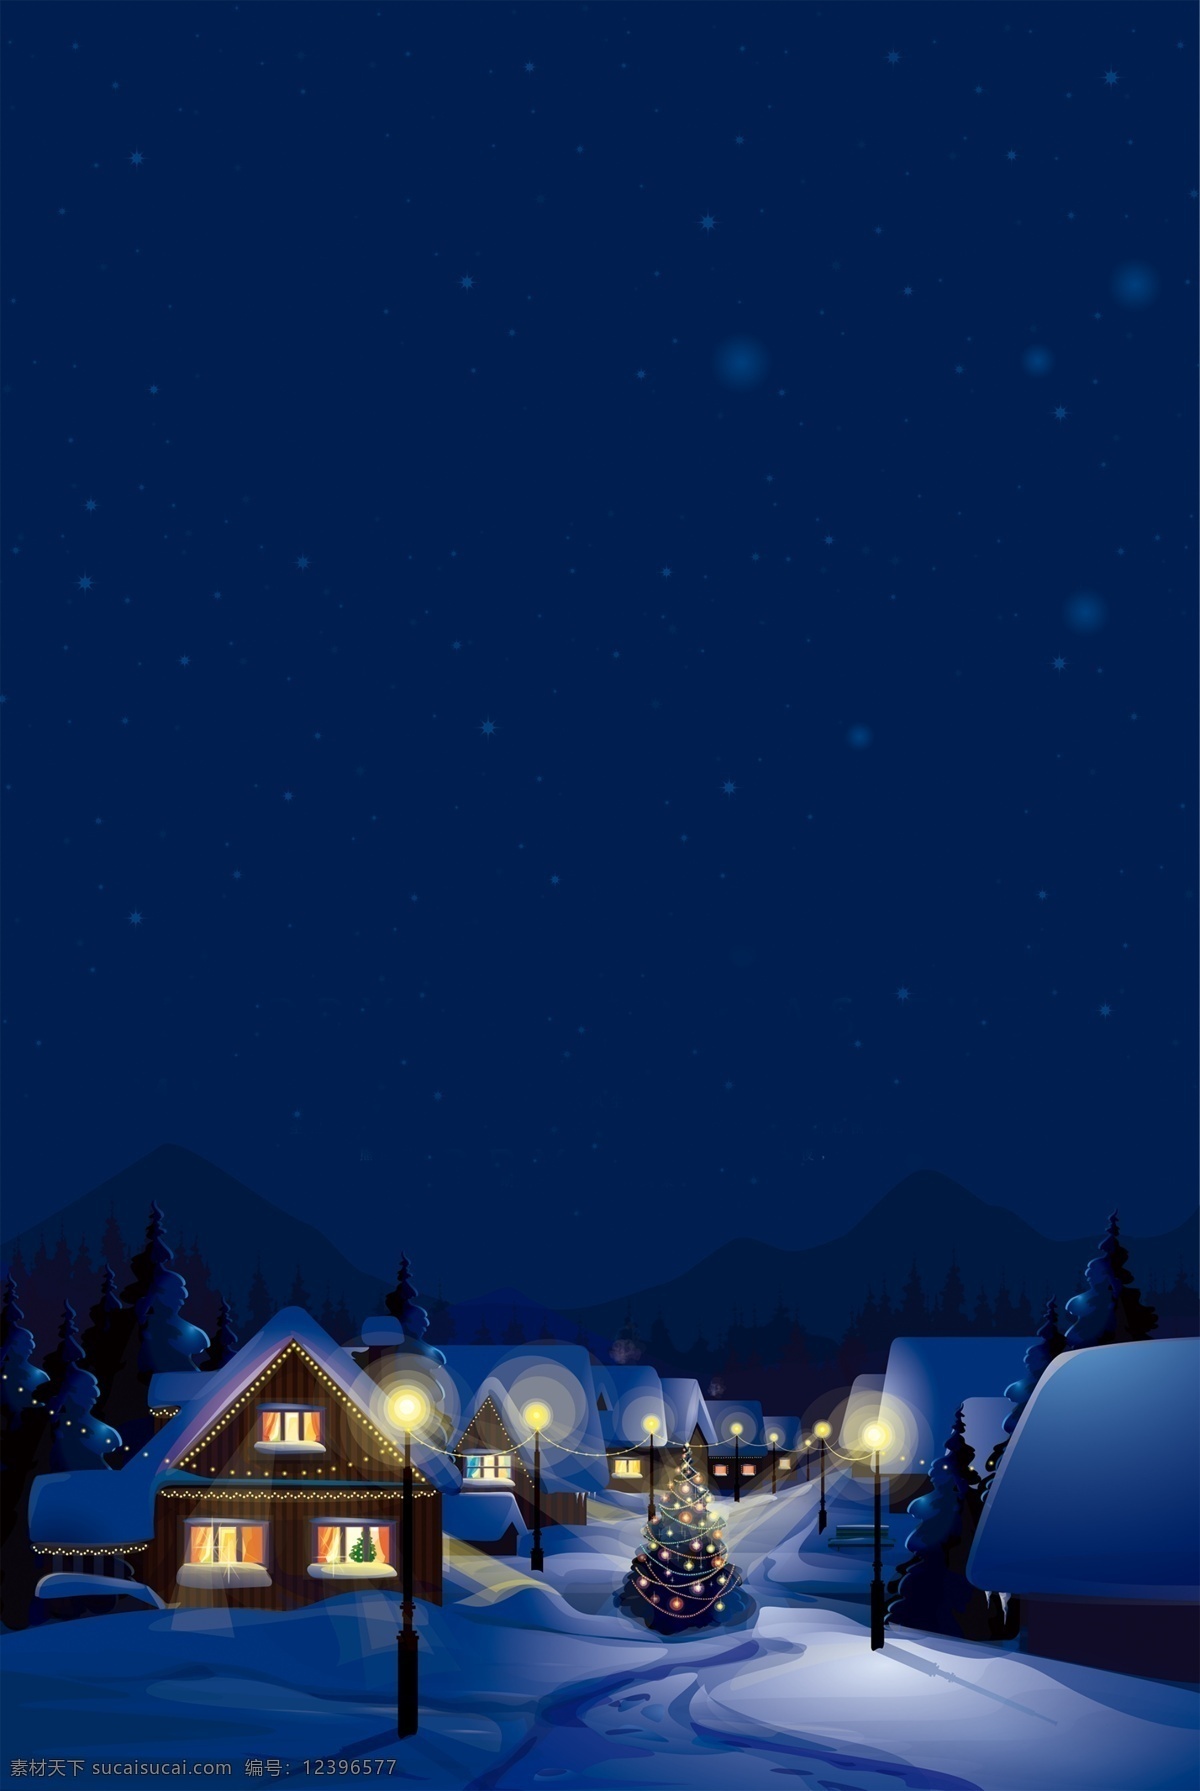 蓝色 浪漫 圣诞 宣传 展板 背景 圣诞元素 圣诞素材 圣诞节 节日素材 海报素材 2019